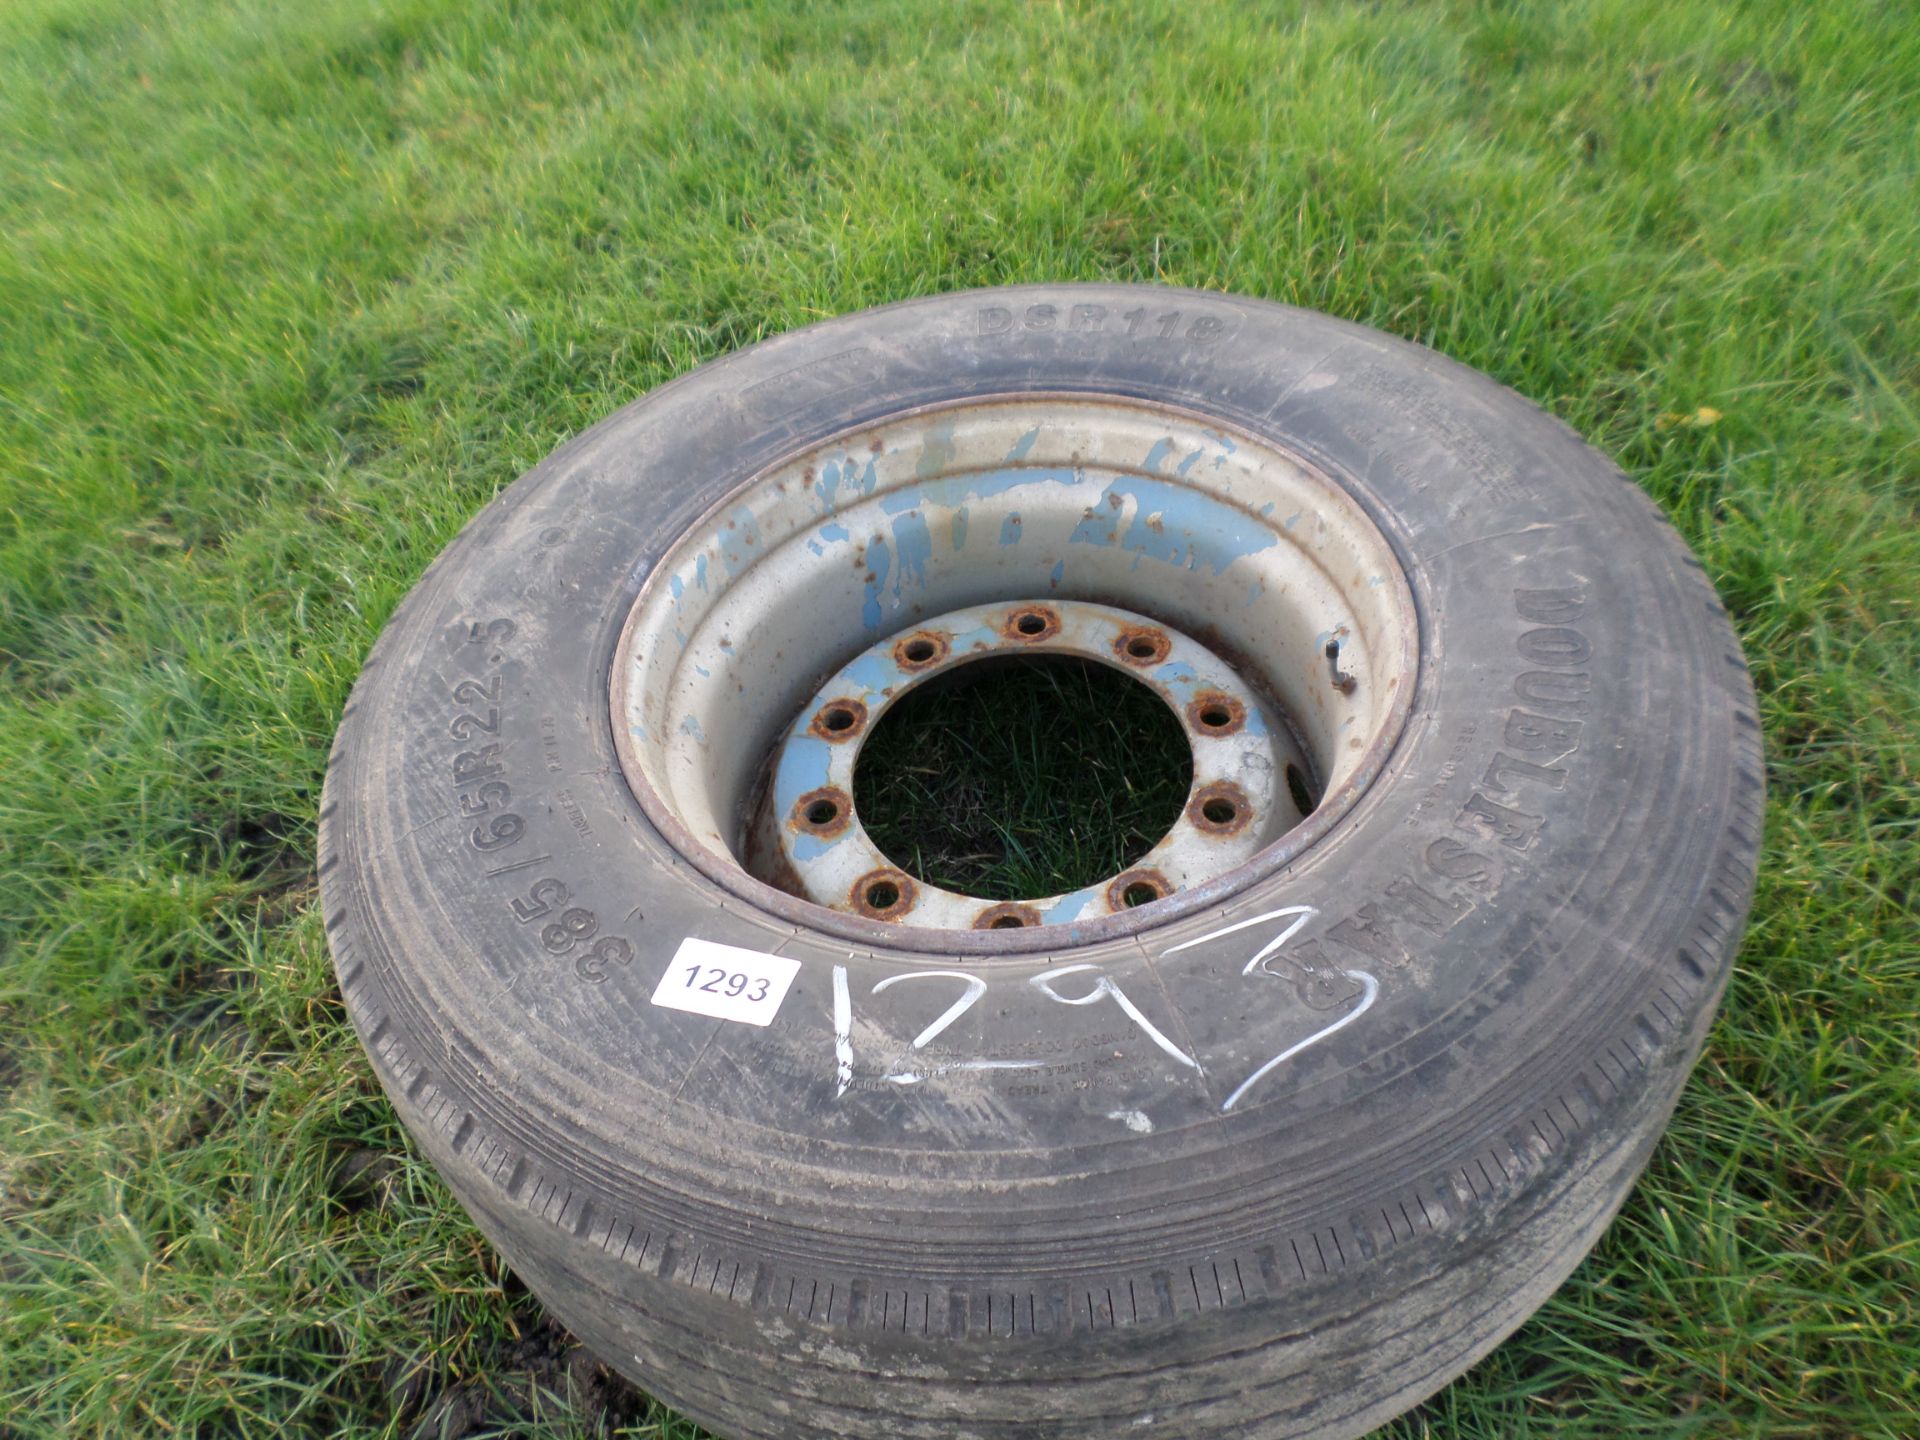 385-65-22.5 wheels & tyre NO VAT - Image 2 of 2